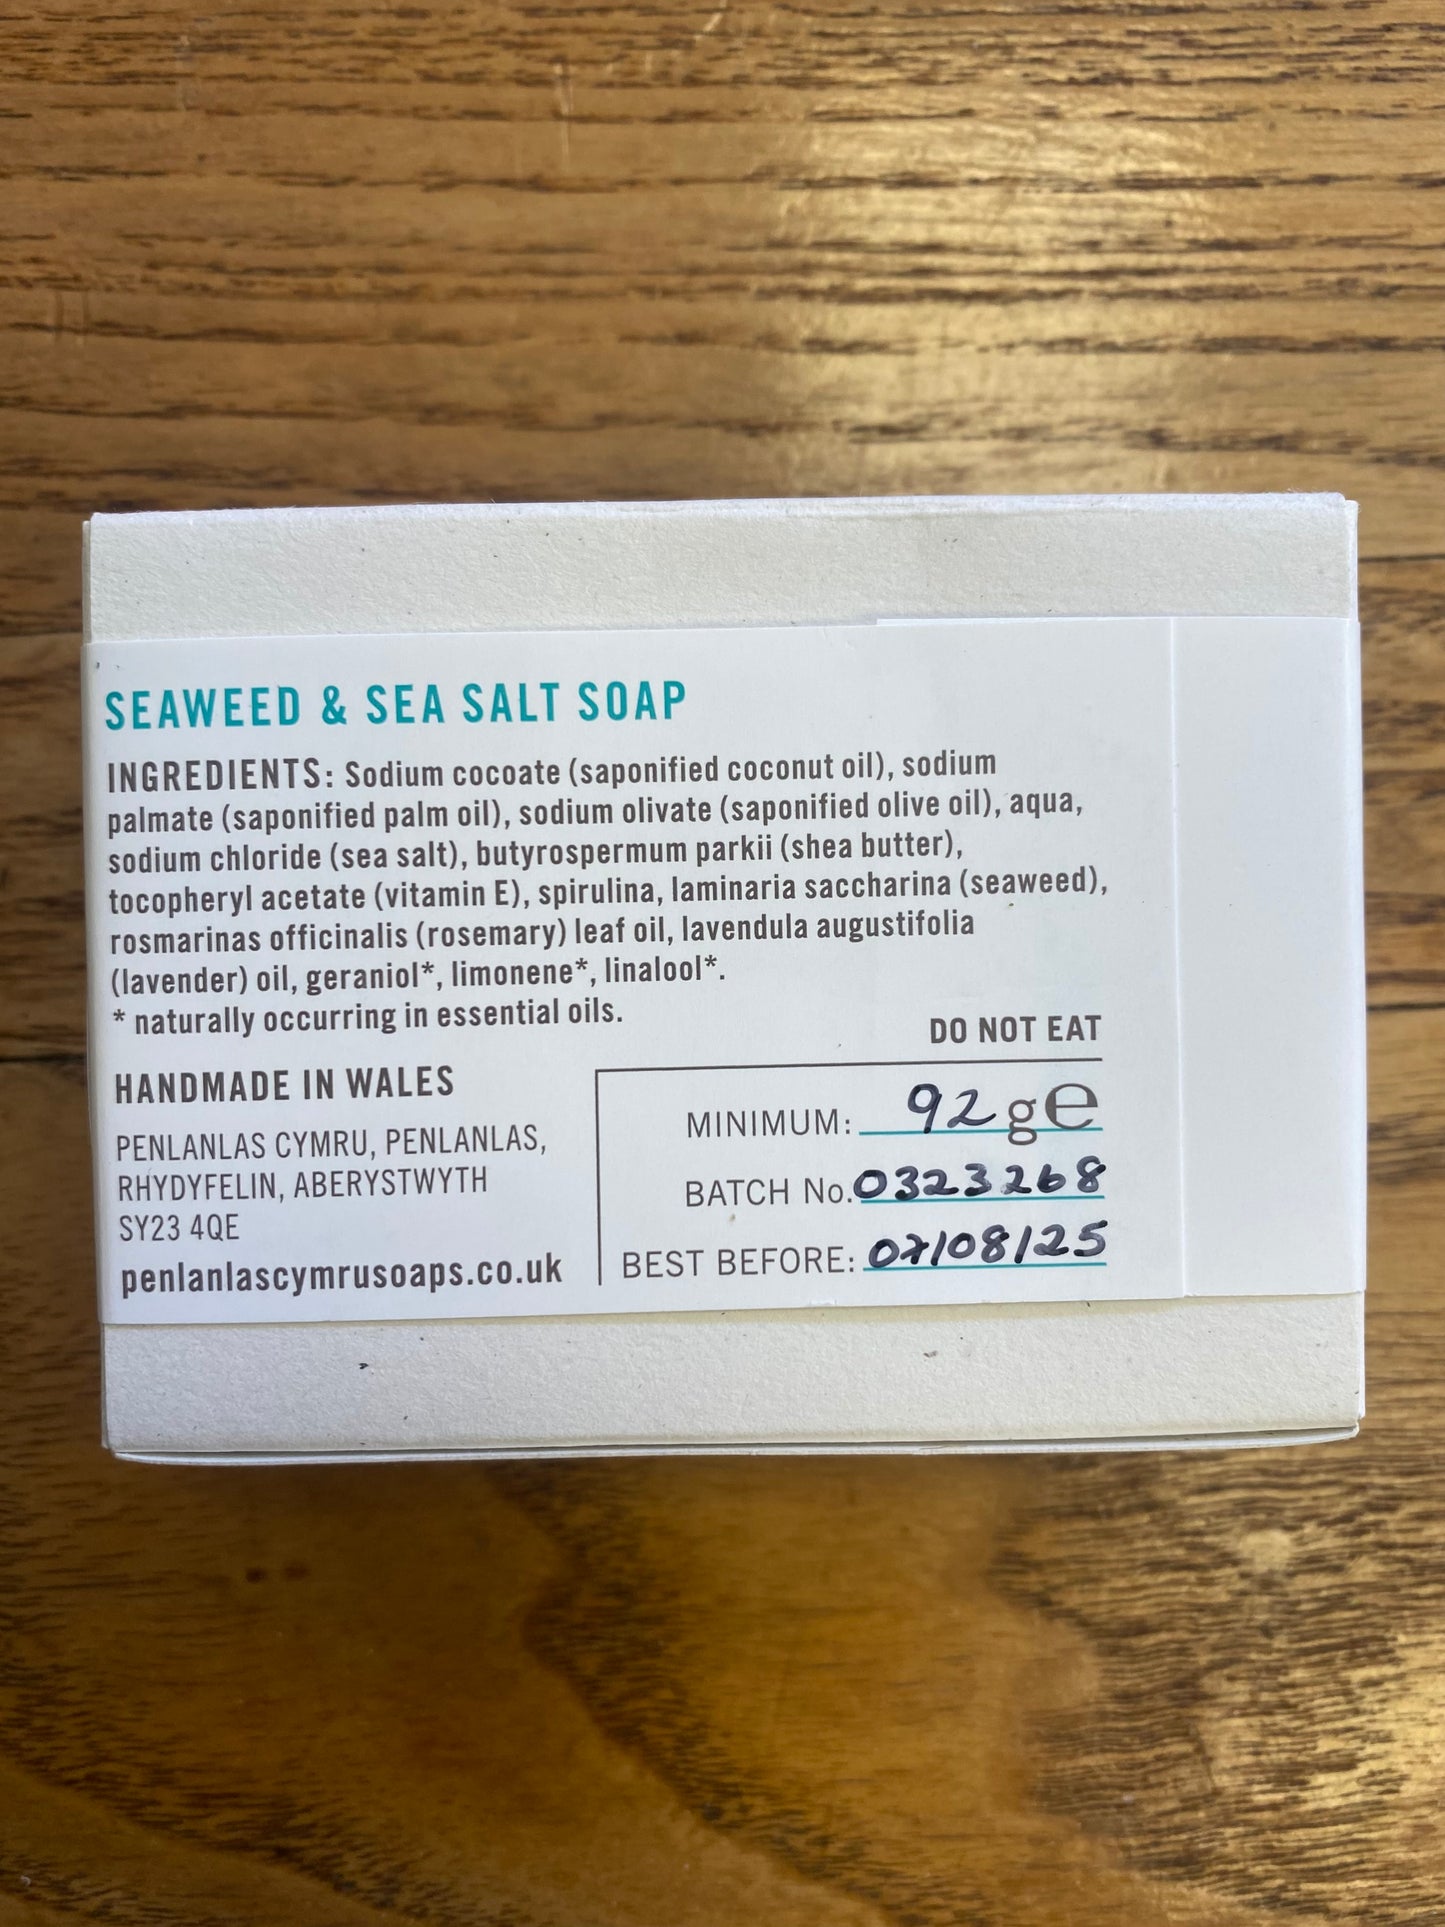 Handmade Natural Soap